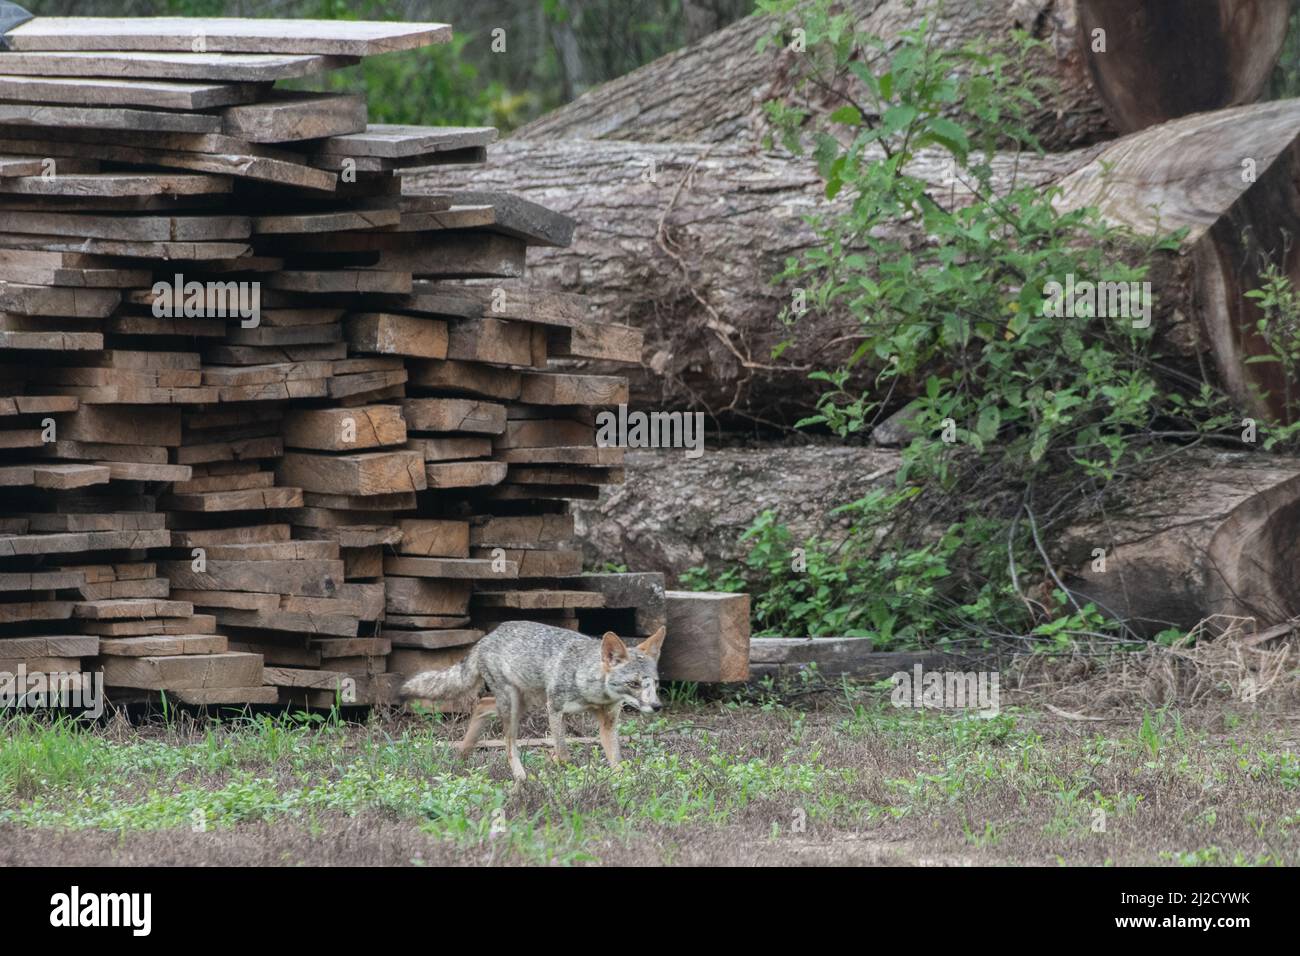 La volpe di Sechuran (Lycalopex sechurae) che esplora un albero recentemente abbattuto, il disboscamento ed altre forme di perdita dell'habitat sono una minaccia importante alla fauna selvatica. Foto Stock